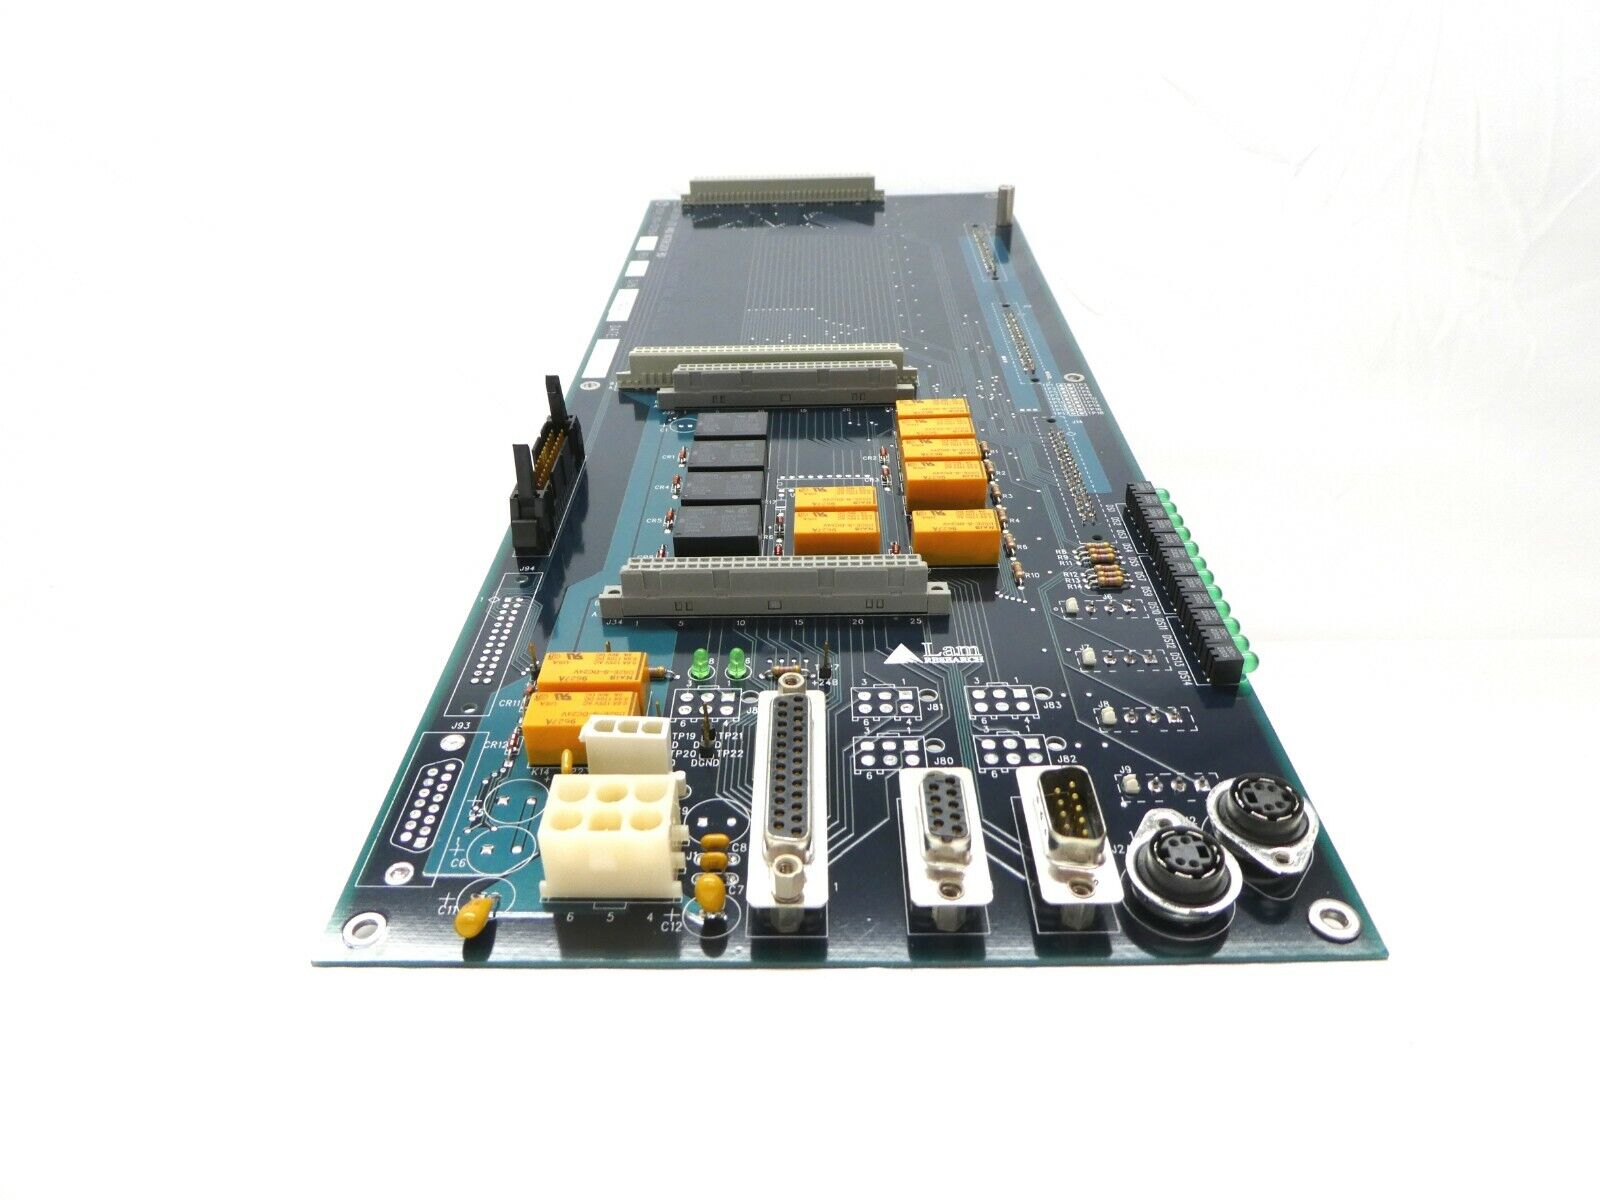 Lam Research 810-707054-001 Gas Box I/O Interlock Board PCB FPD Continuum Spare